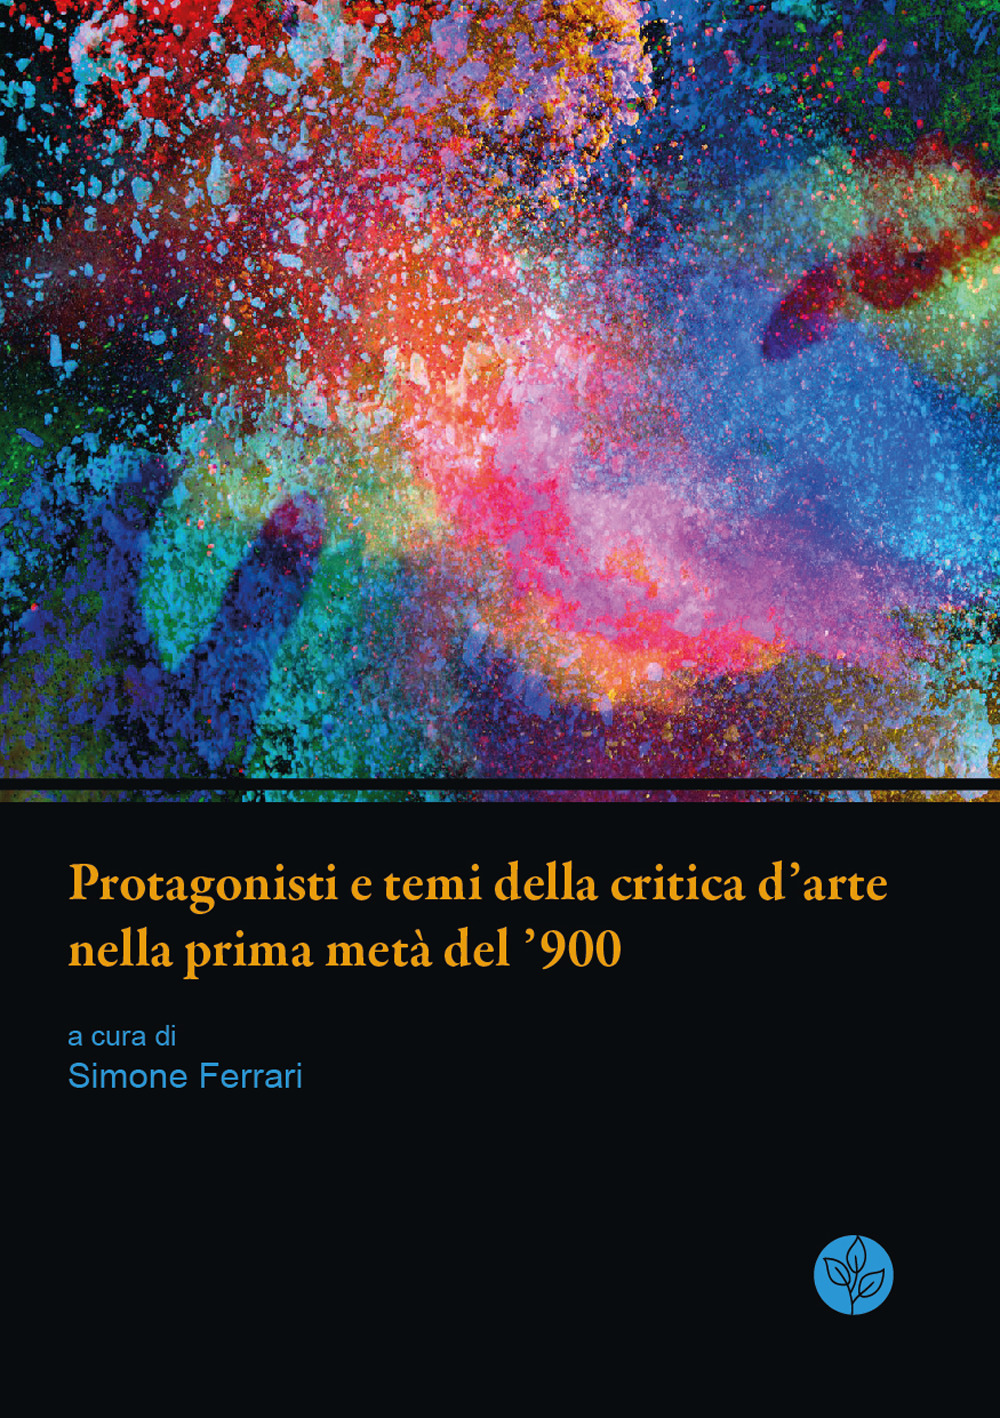 Protagonisti e temi della critica d'arte nella prima metà del '900. Atti della giornata di studi. Università di Parma, 13 giugno 2019